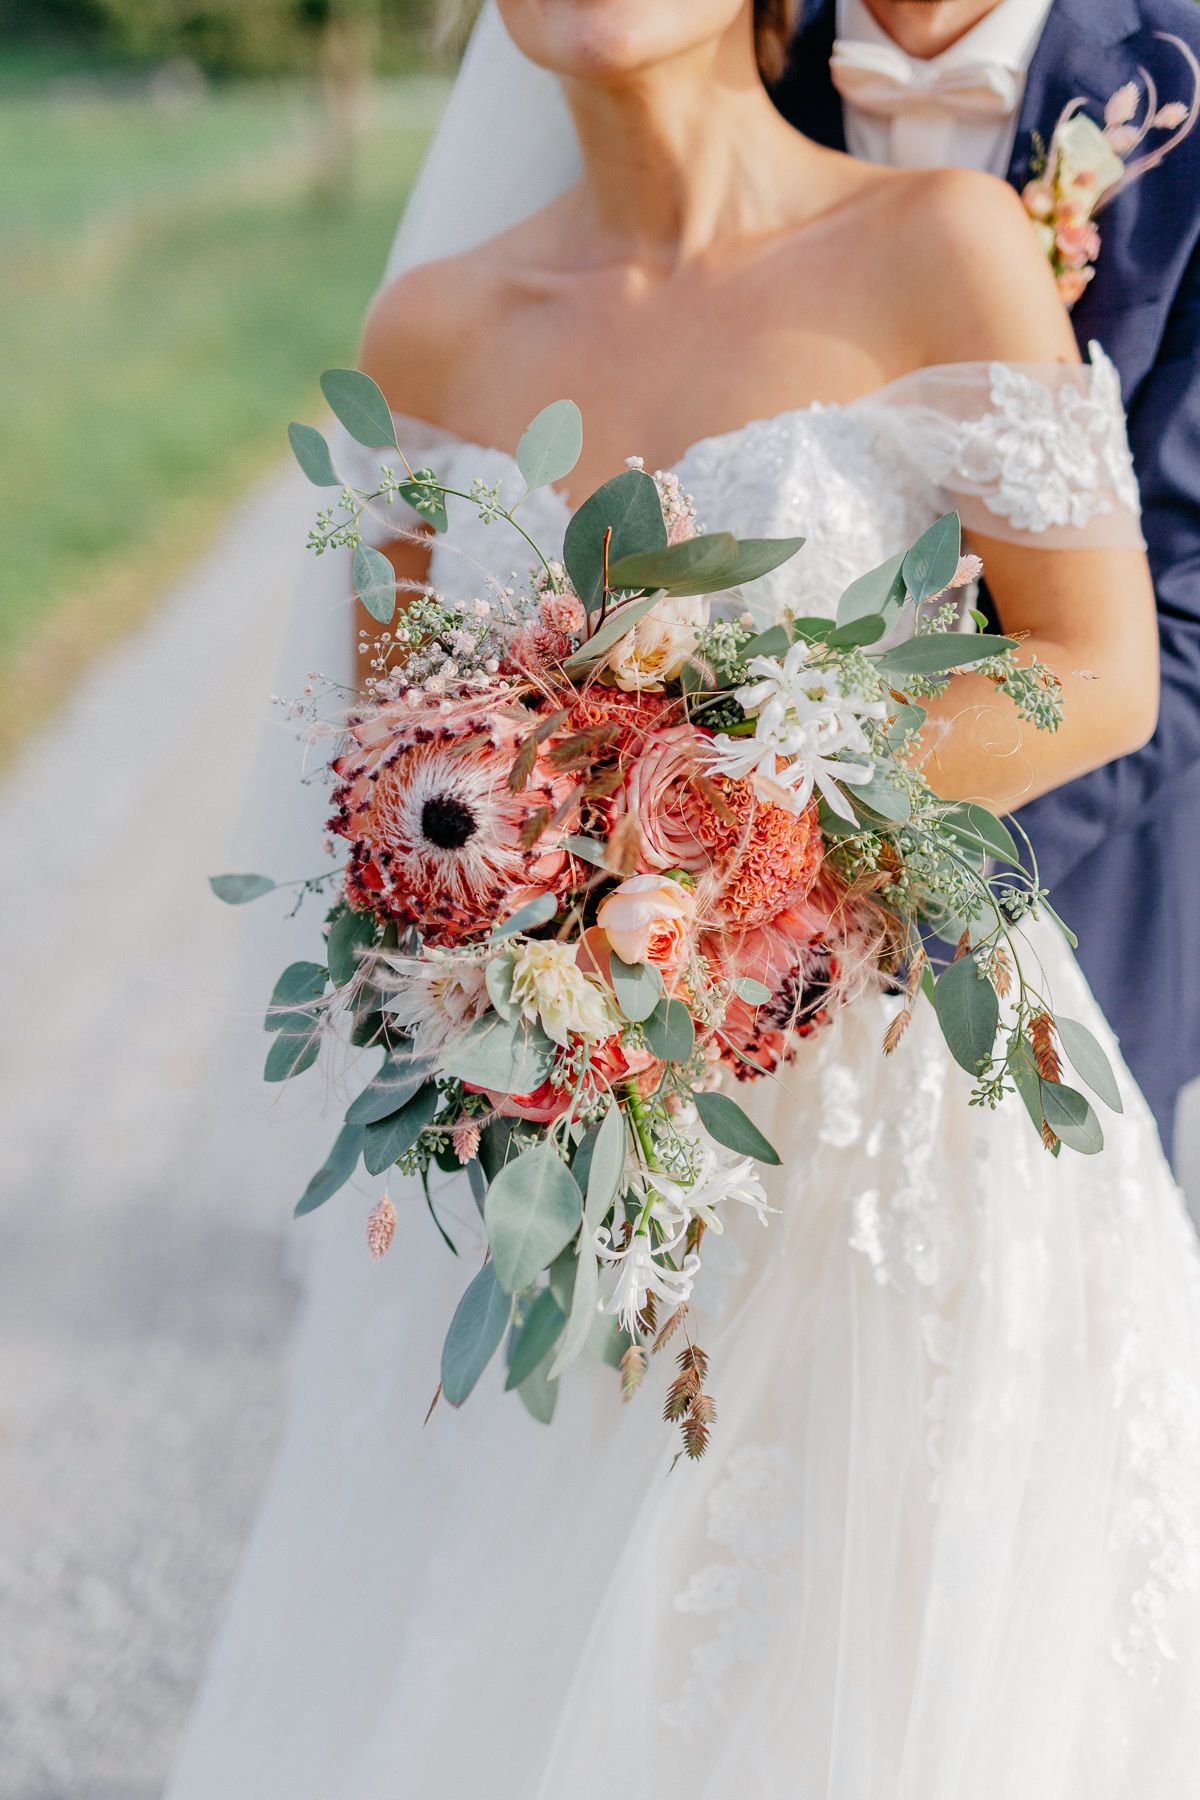 Die Braut hält einen farbenfrohen Brautstrauß mit Eukalyptus.